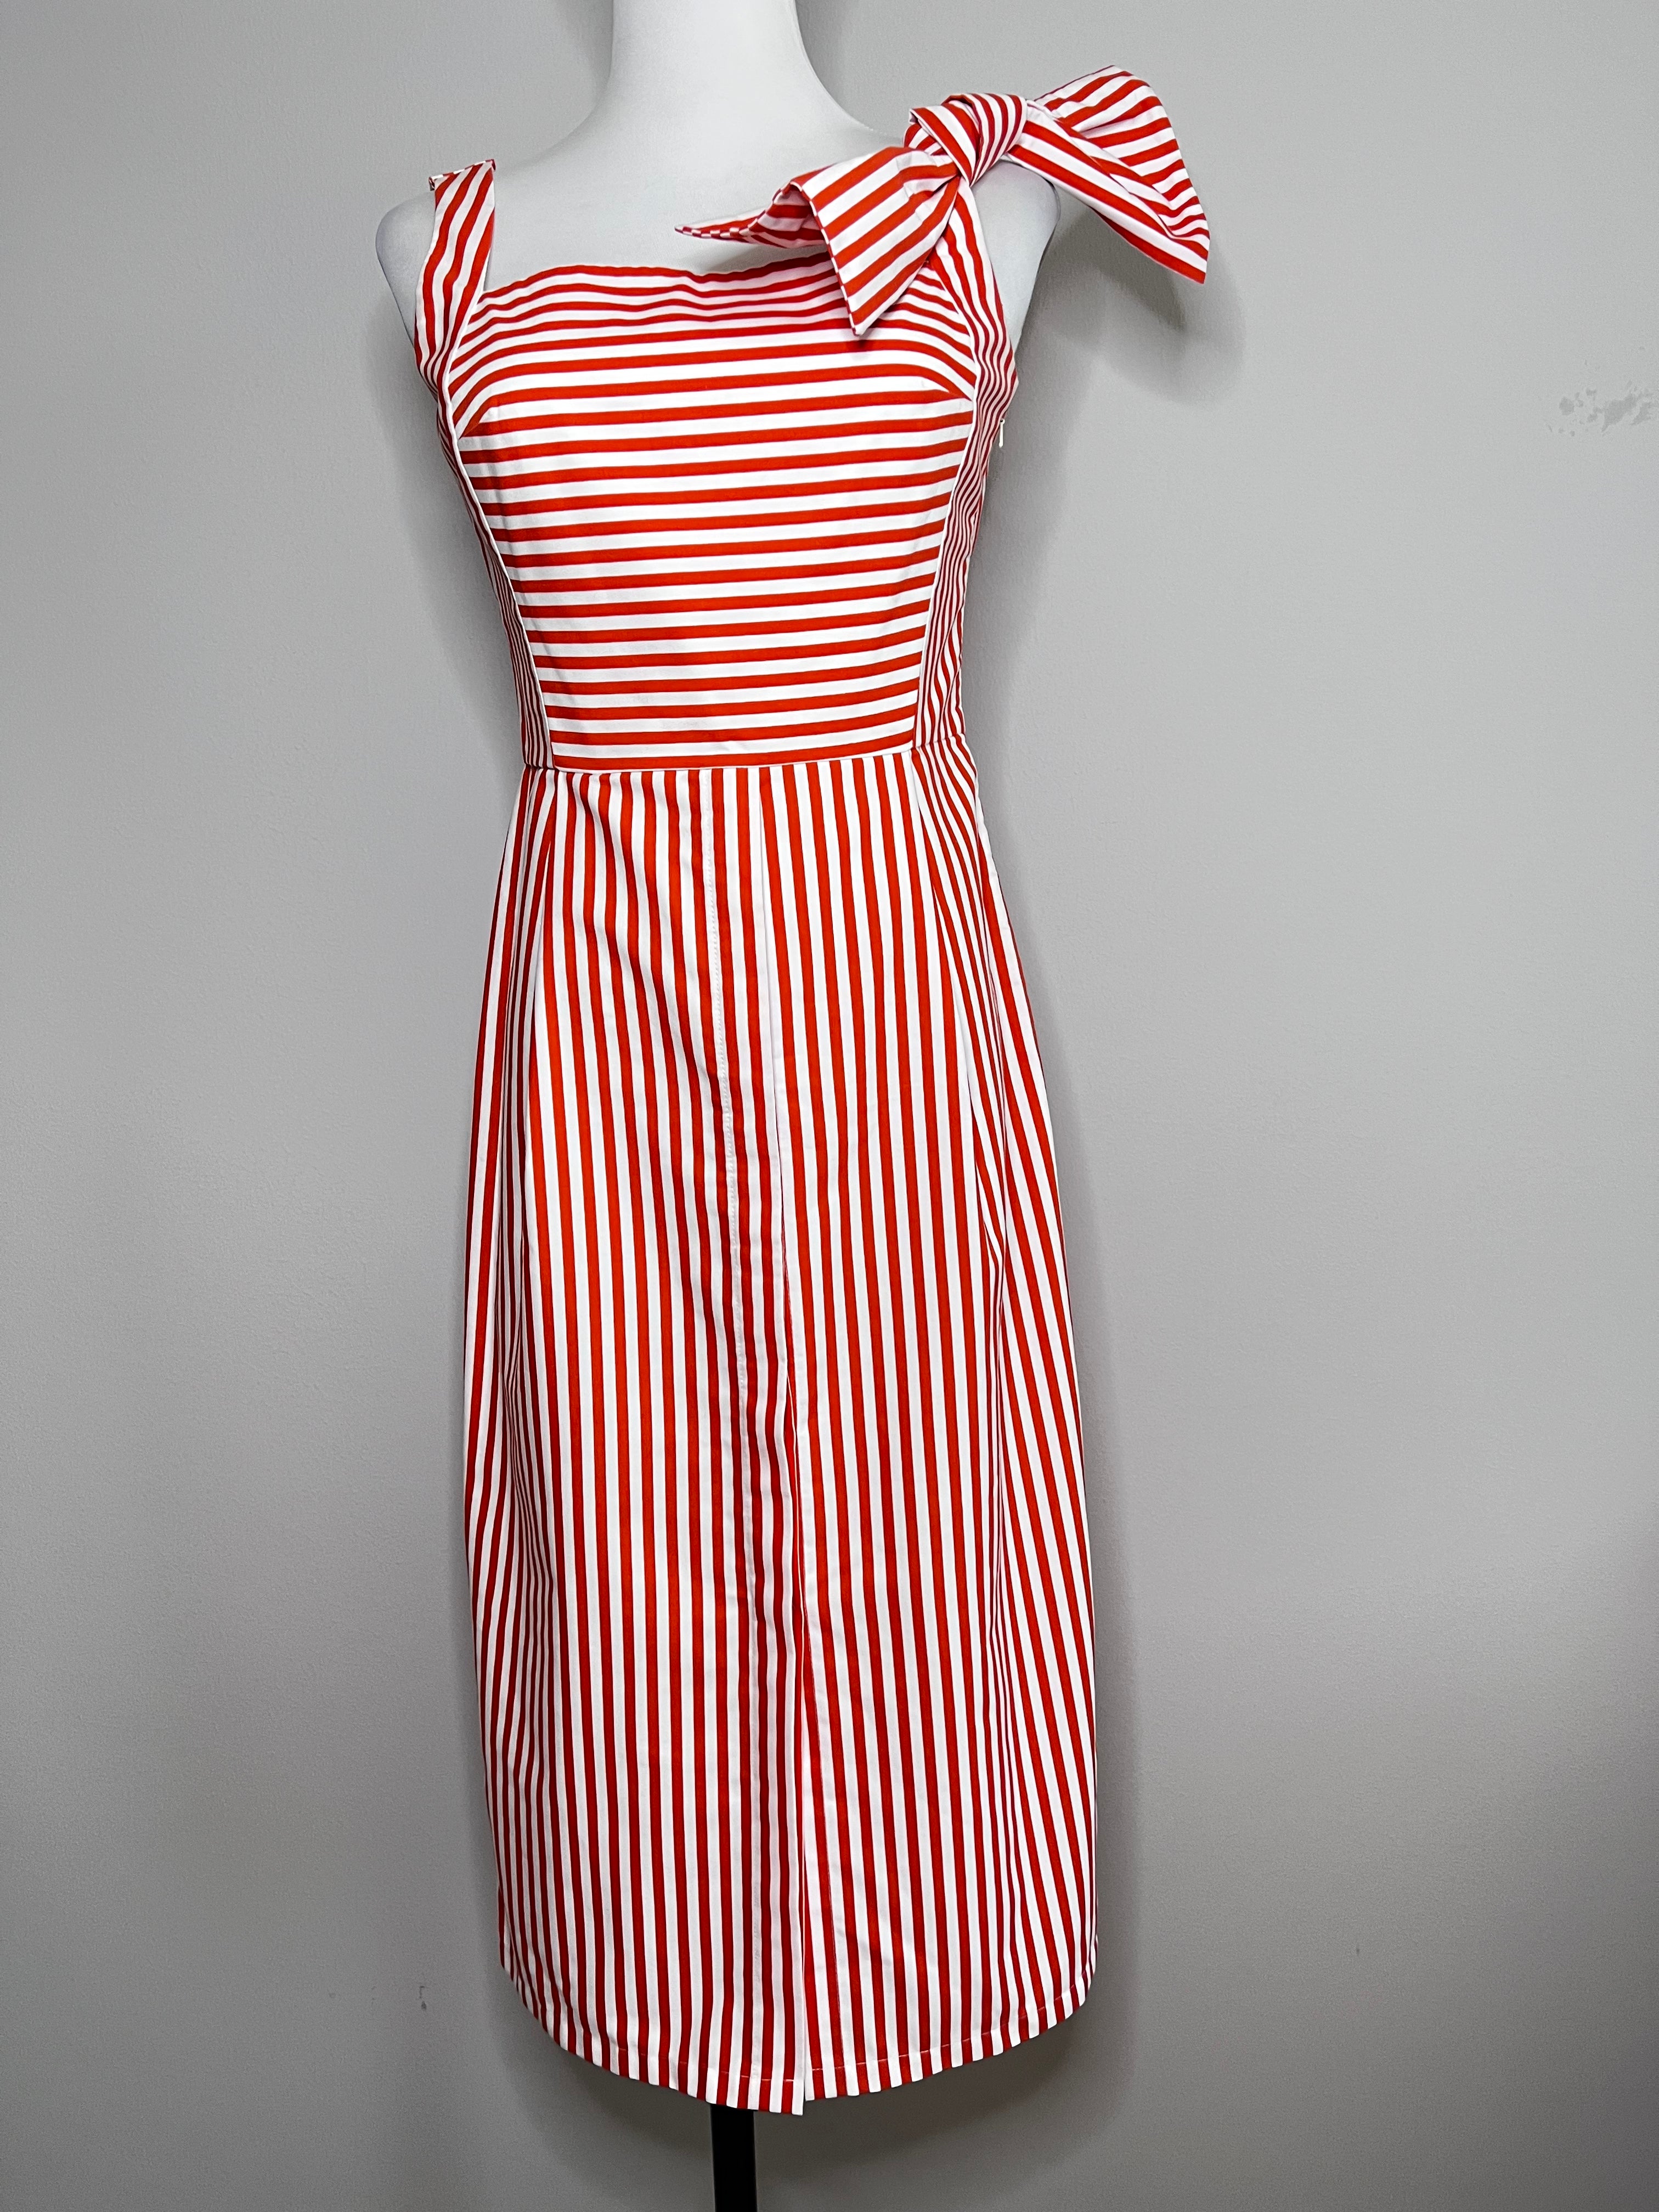 all times summer midi striped dress - VAFA ADAMS